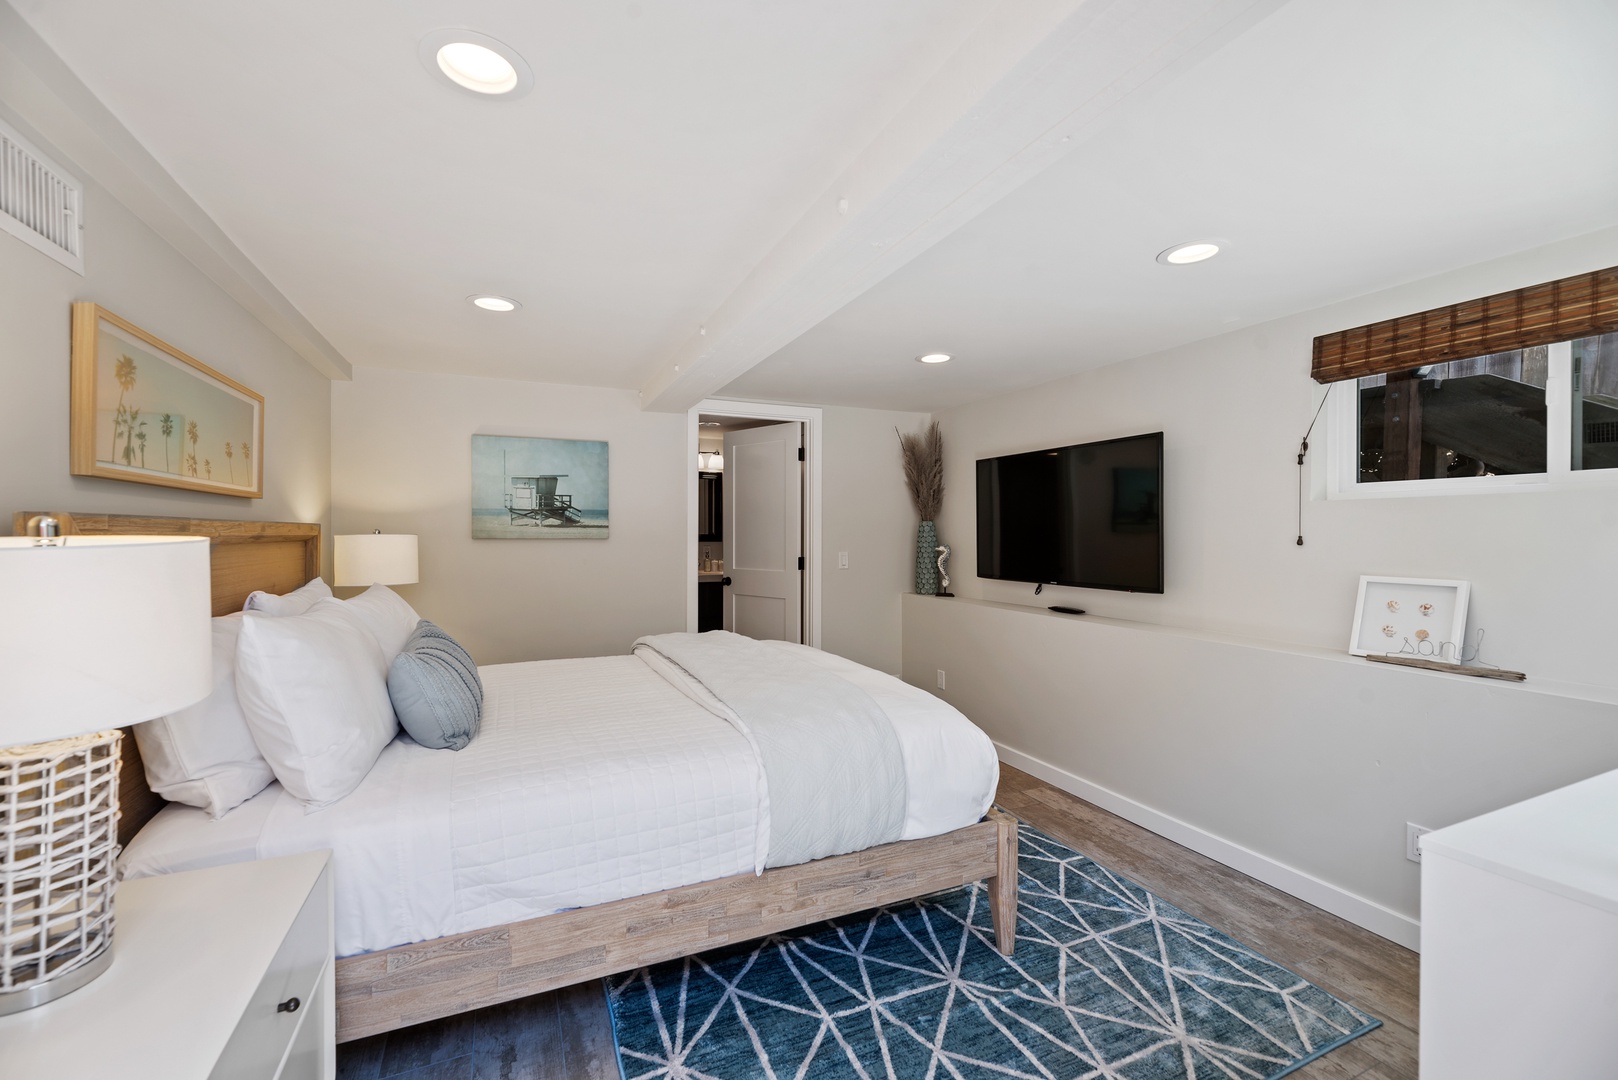 Del Mar Vacation Rentals, Del Mar Zuni Delight - Additional guest bedroom